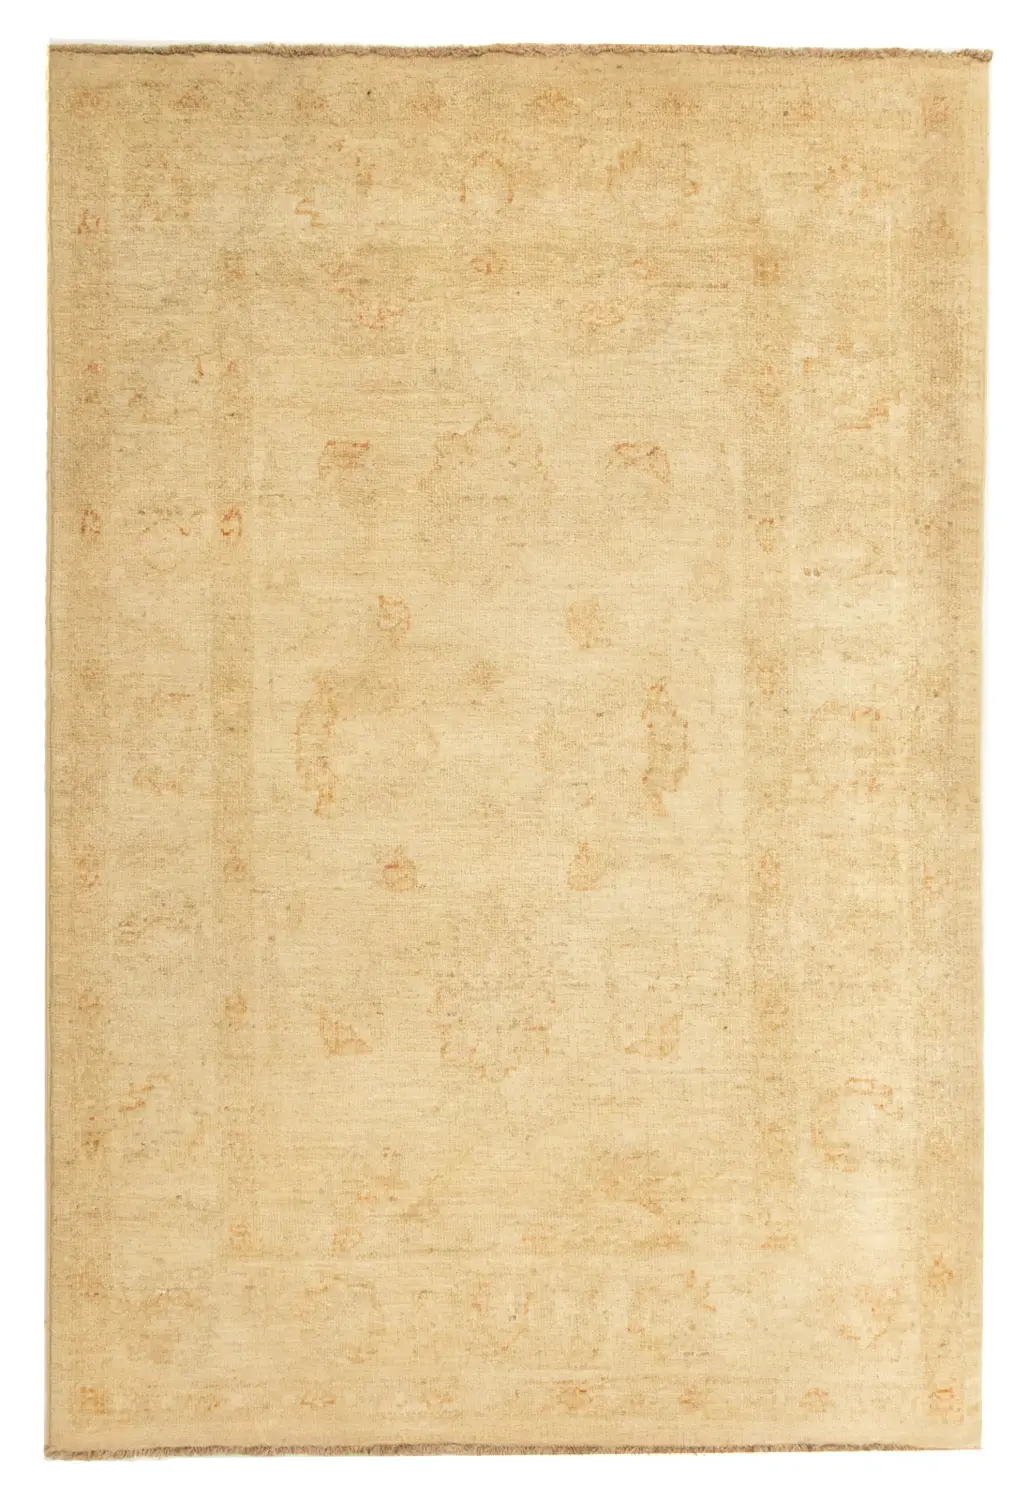 127 x 86 Teppich Ziegler - cm - beige